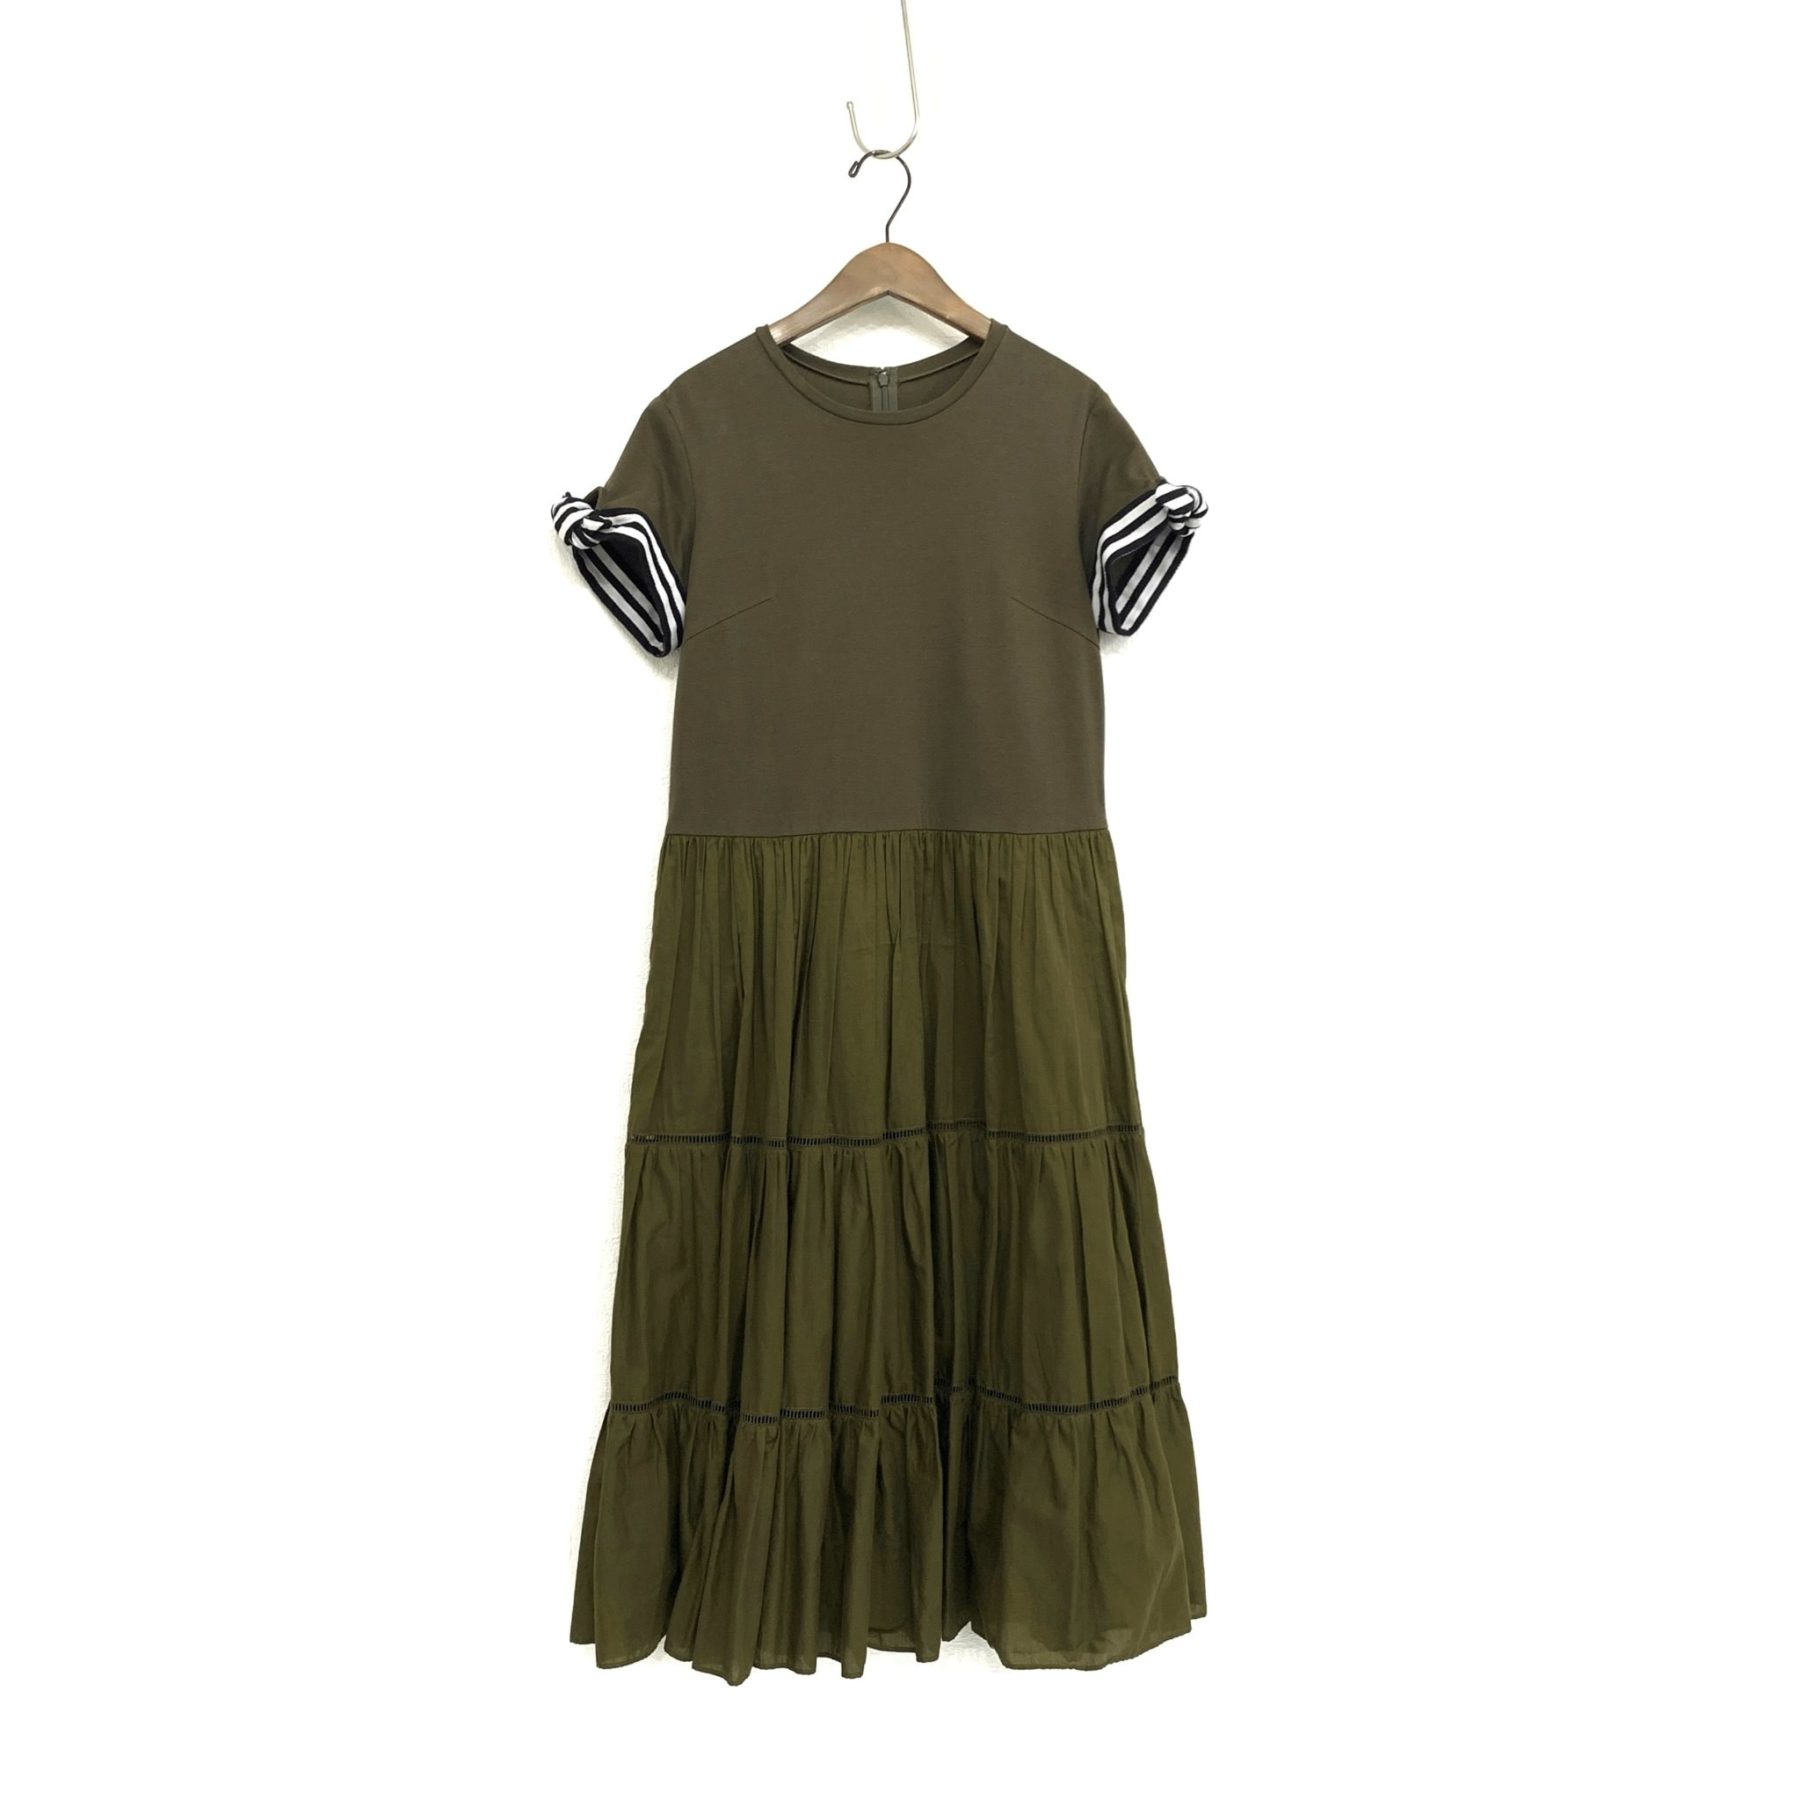 ボーダーズアットバルコニーBALLERINA-TEE-DRESS袖のリボンが可愛いワンピース2019SS商品